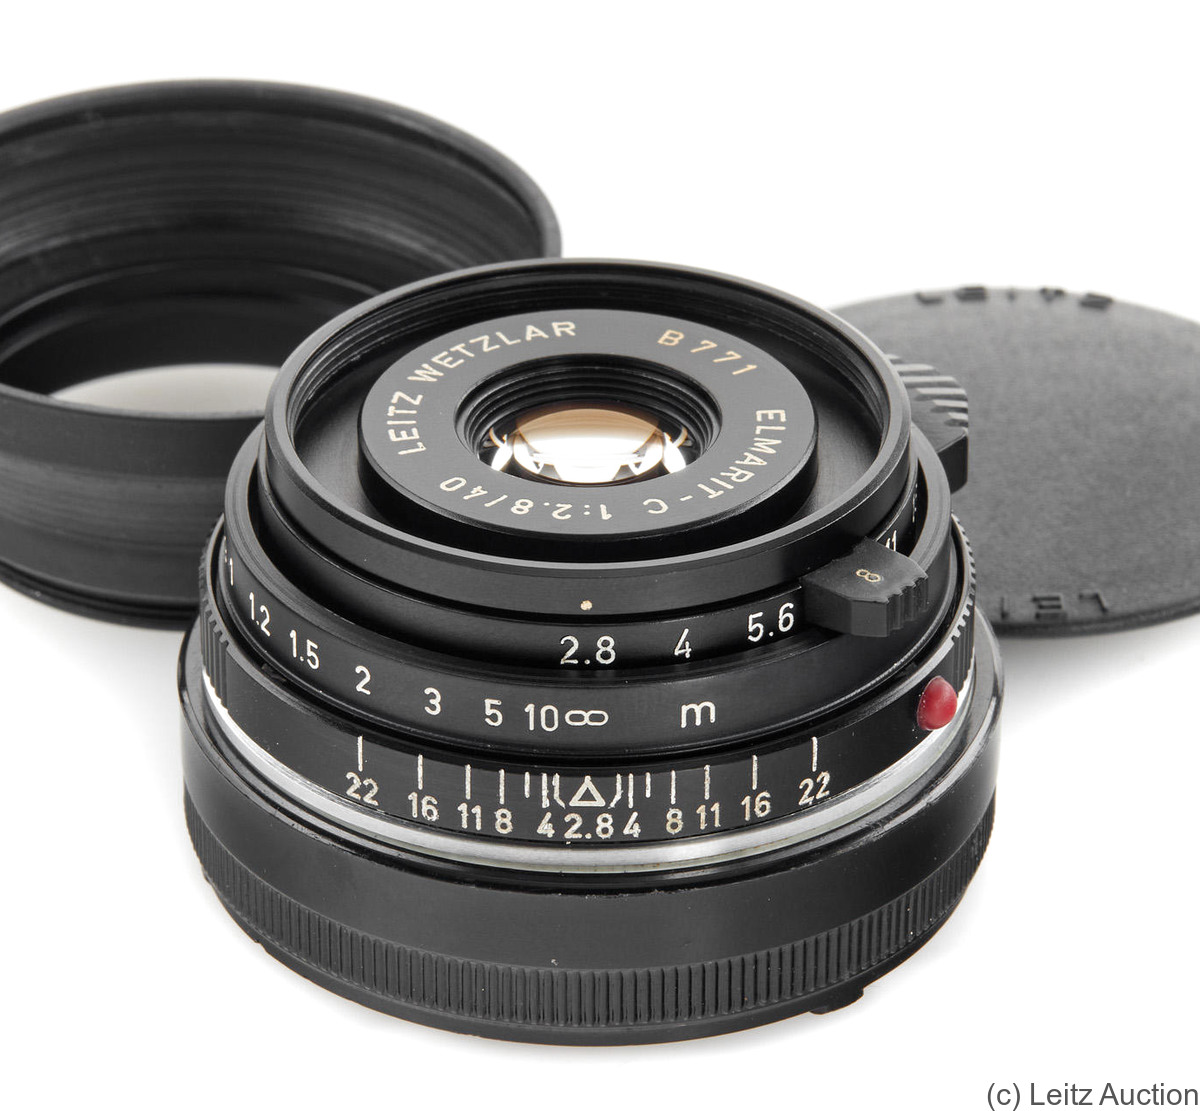 Leitz: 40mm (4cm) f2.8 Elmarit-C (BM, prototype) camera